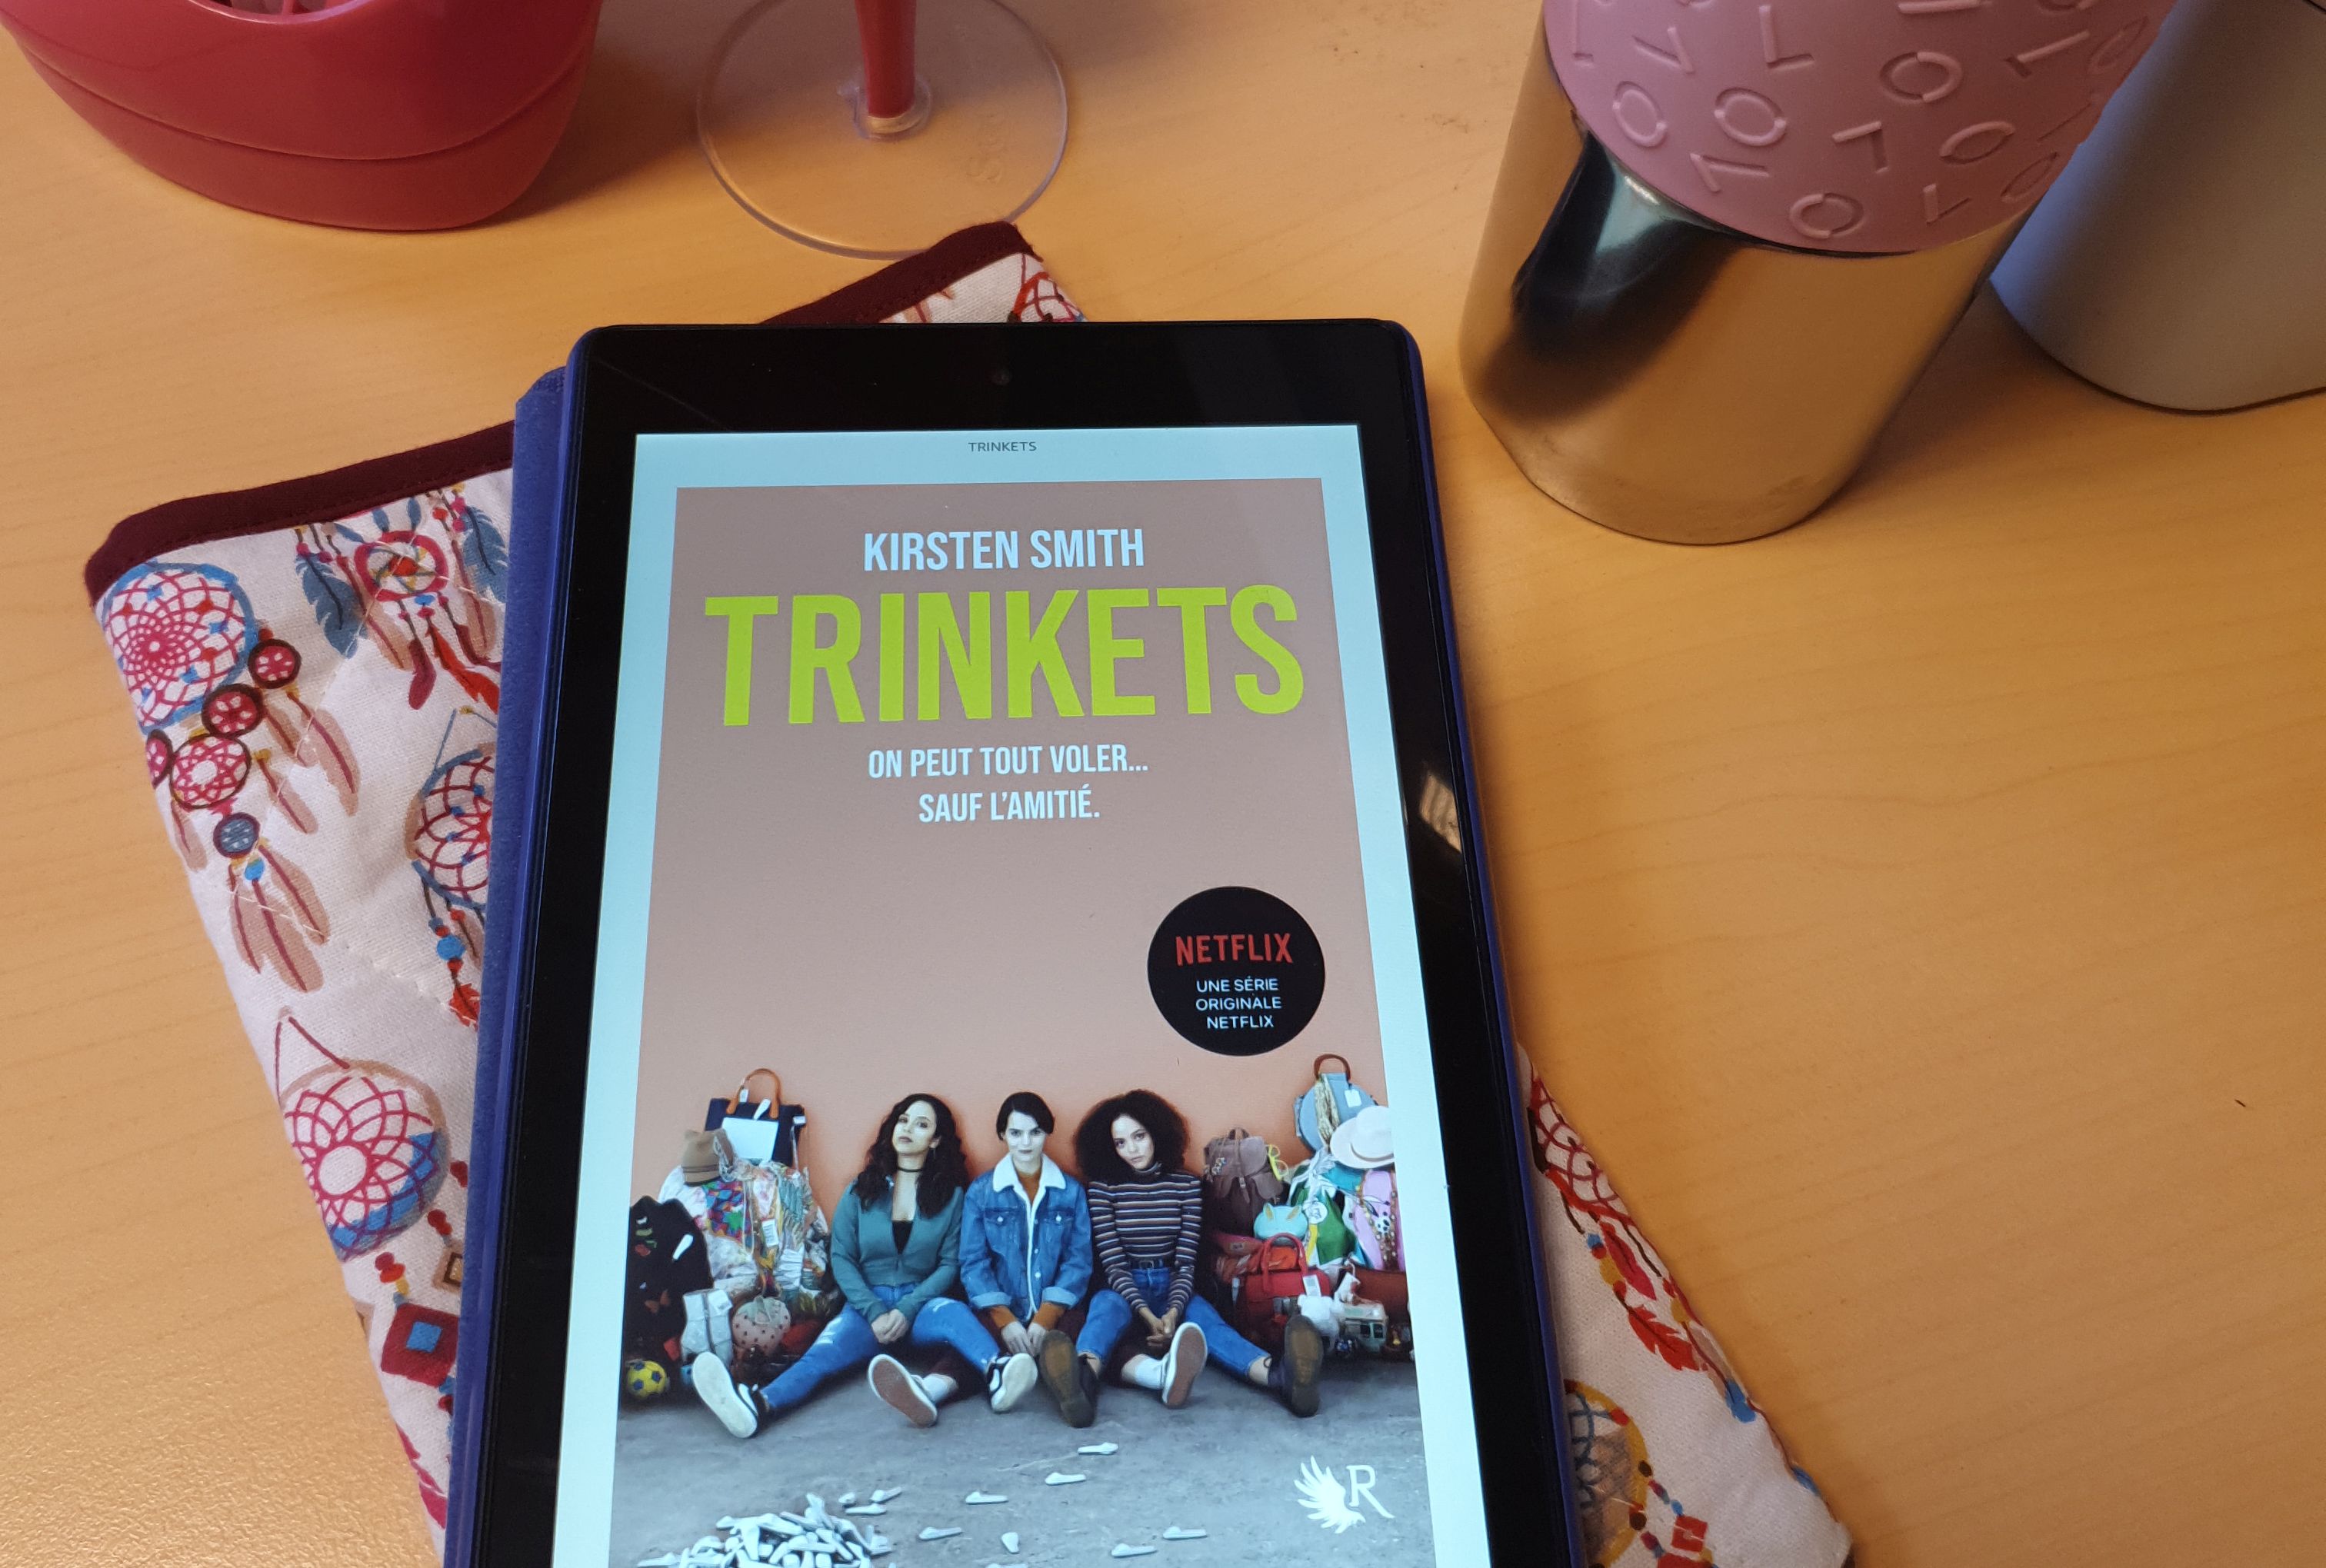 Trinkets (le roman à l'origine de la série Netflix), Kirsten Smith